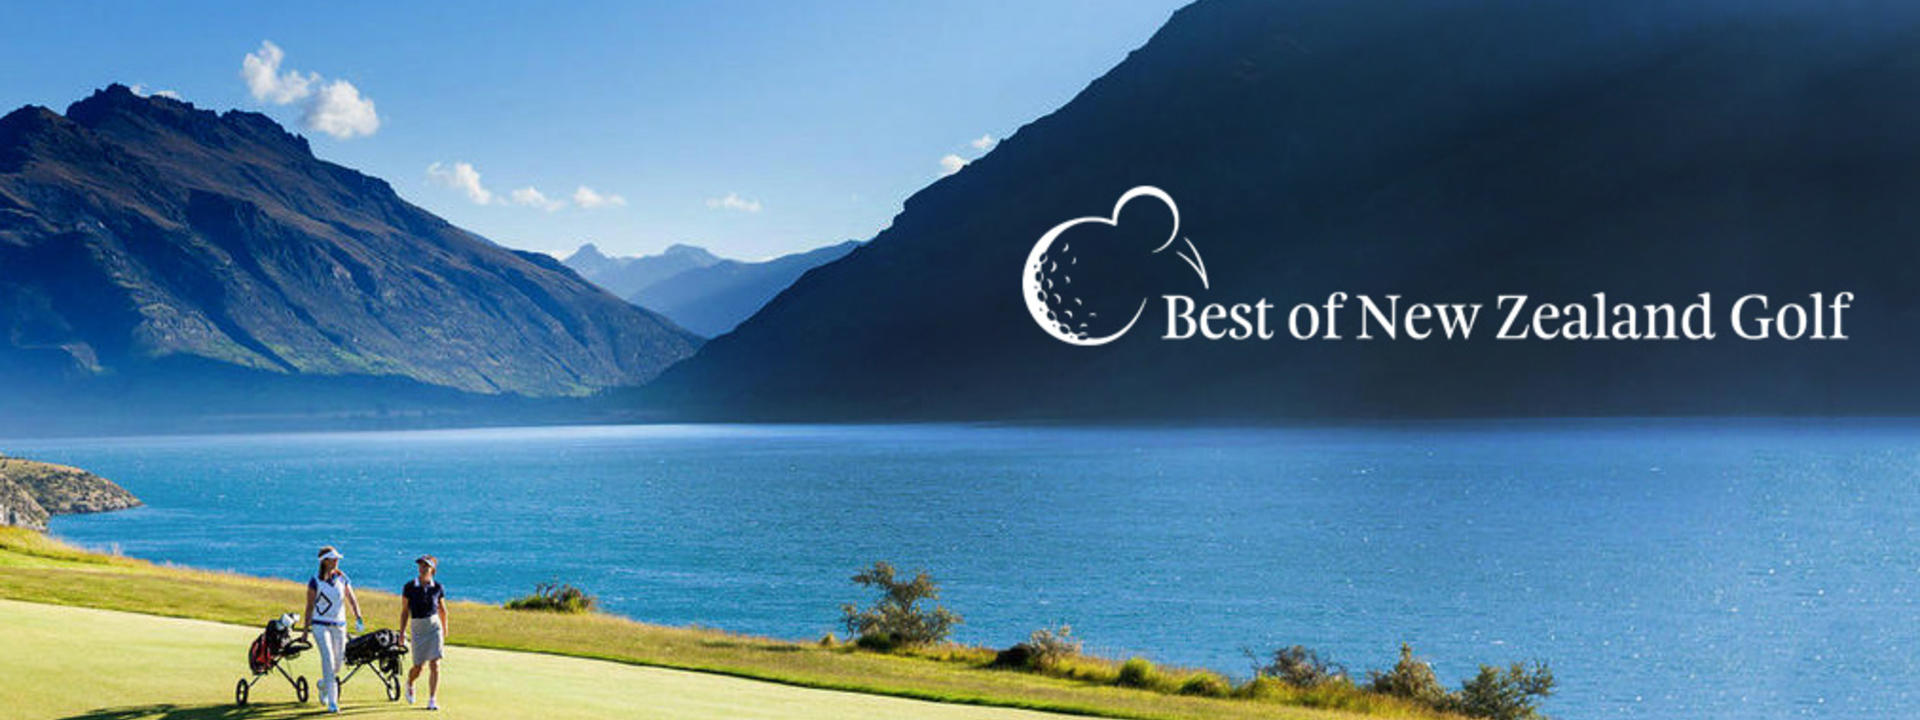 Logo: Best of New Zealand Golf